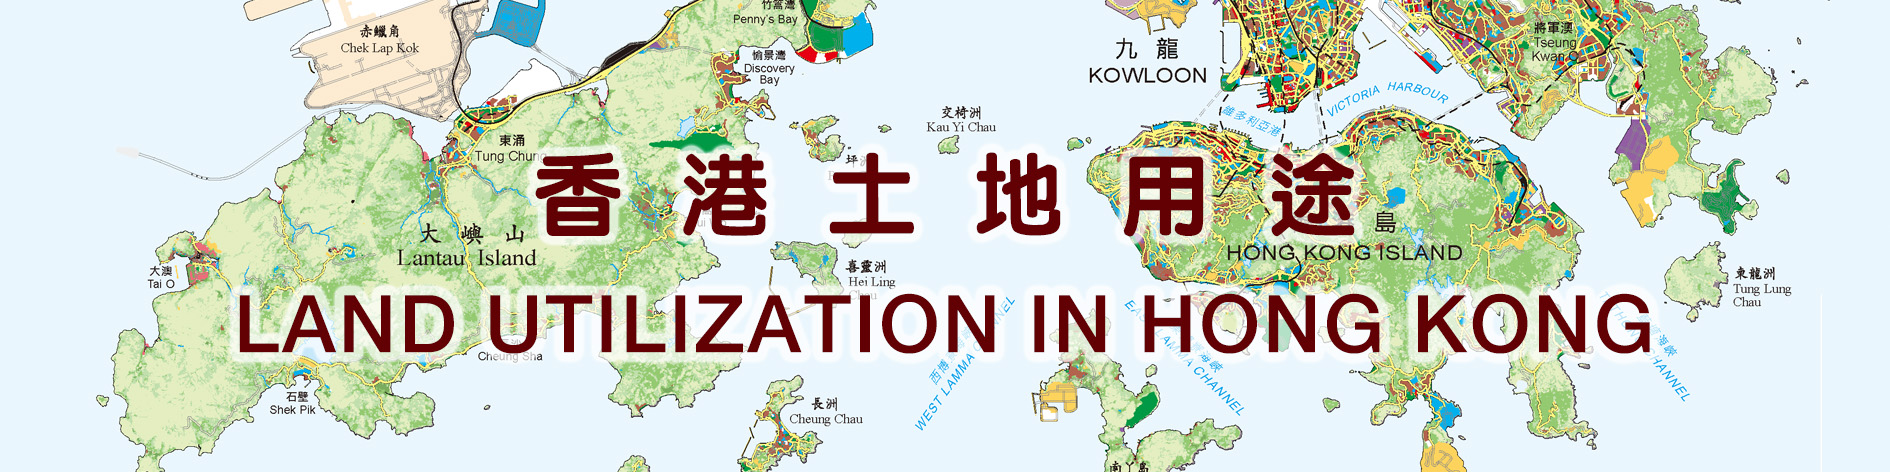 香港土地用途图（只提供繁体版）